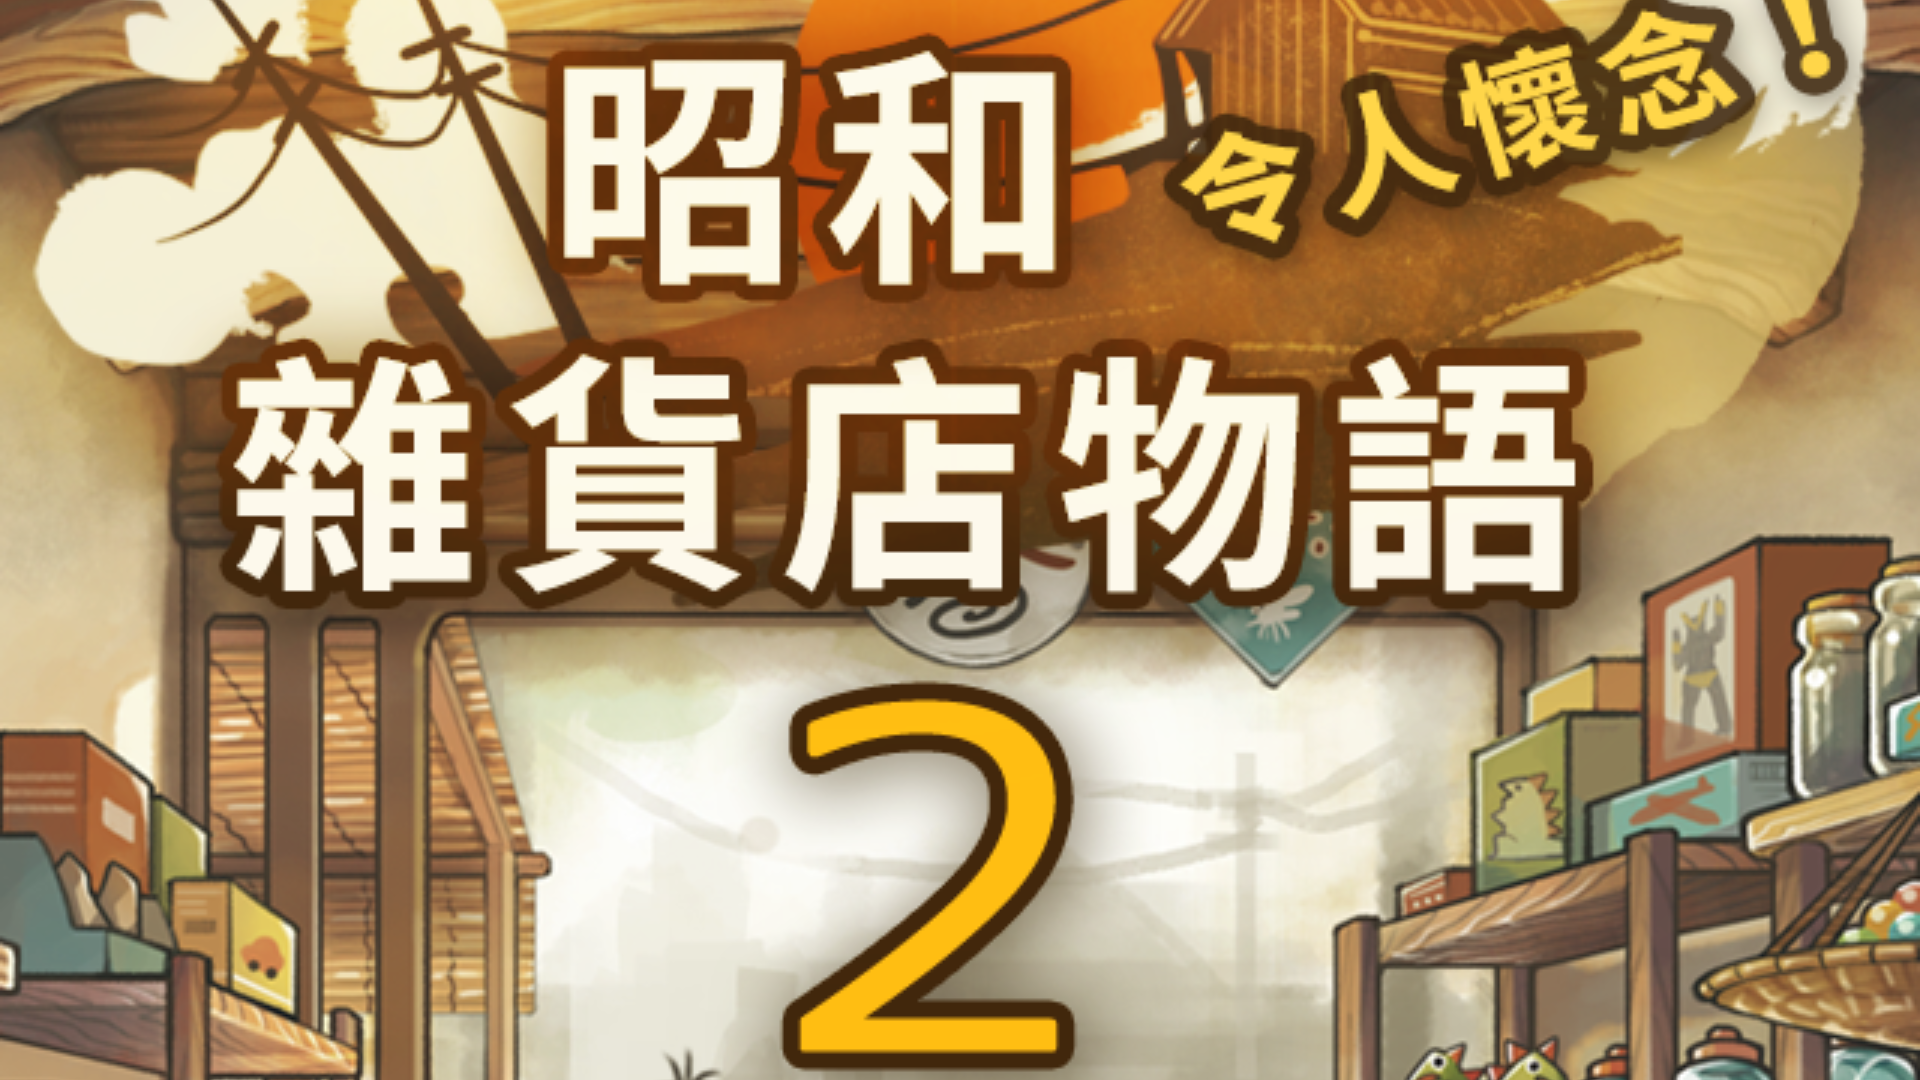 Banner of Mais comovente jogo de desenvolvimento "Showa General Store Story 2" 